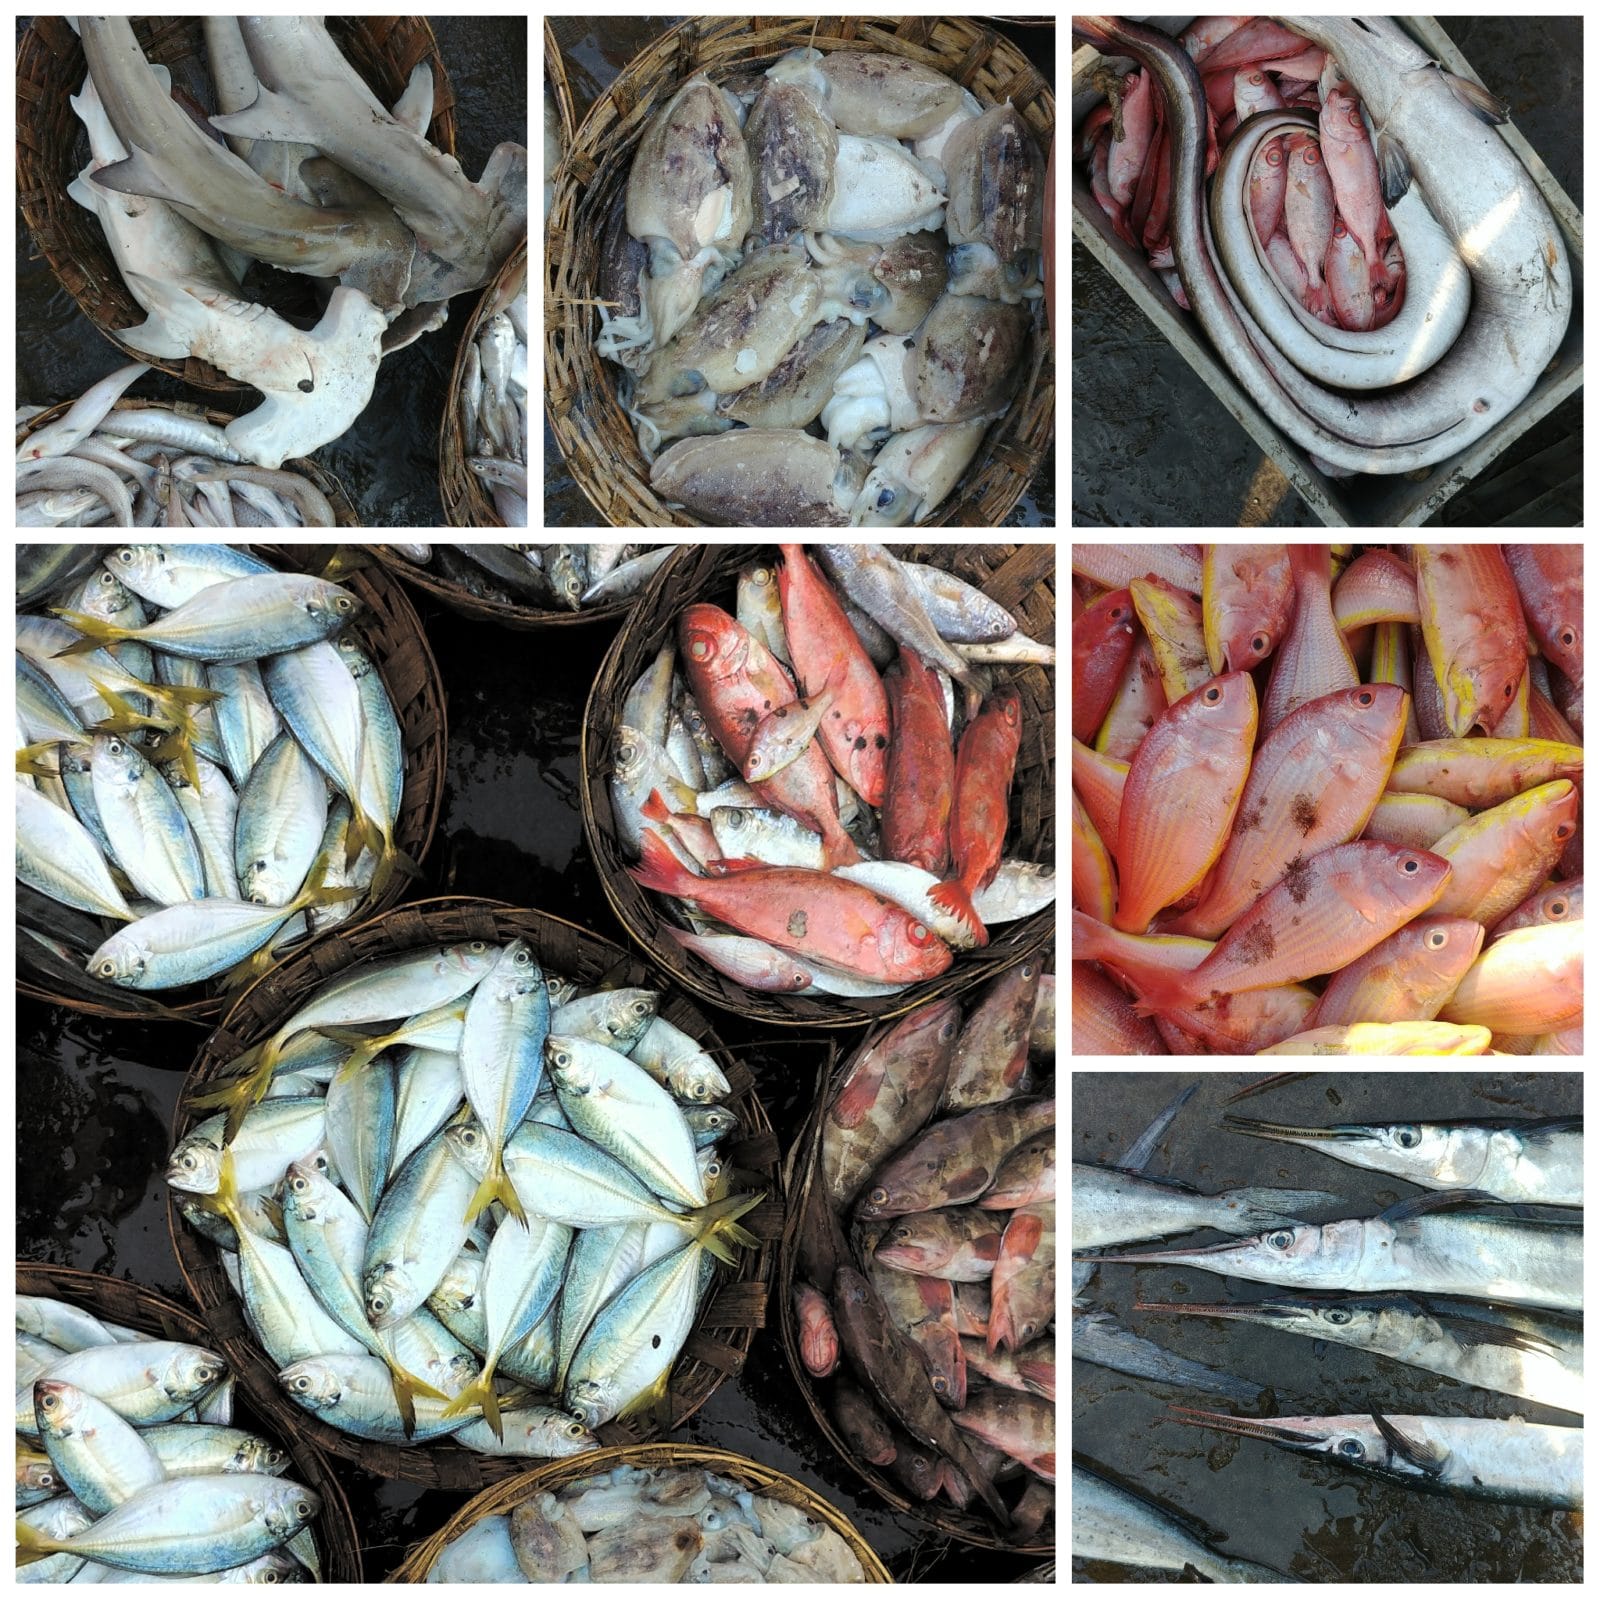 Fish market harnai dapoli